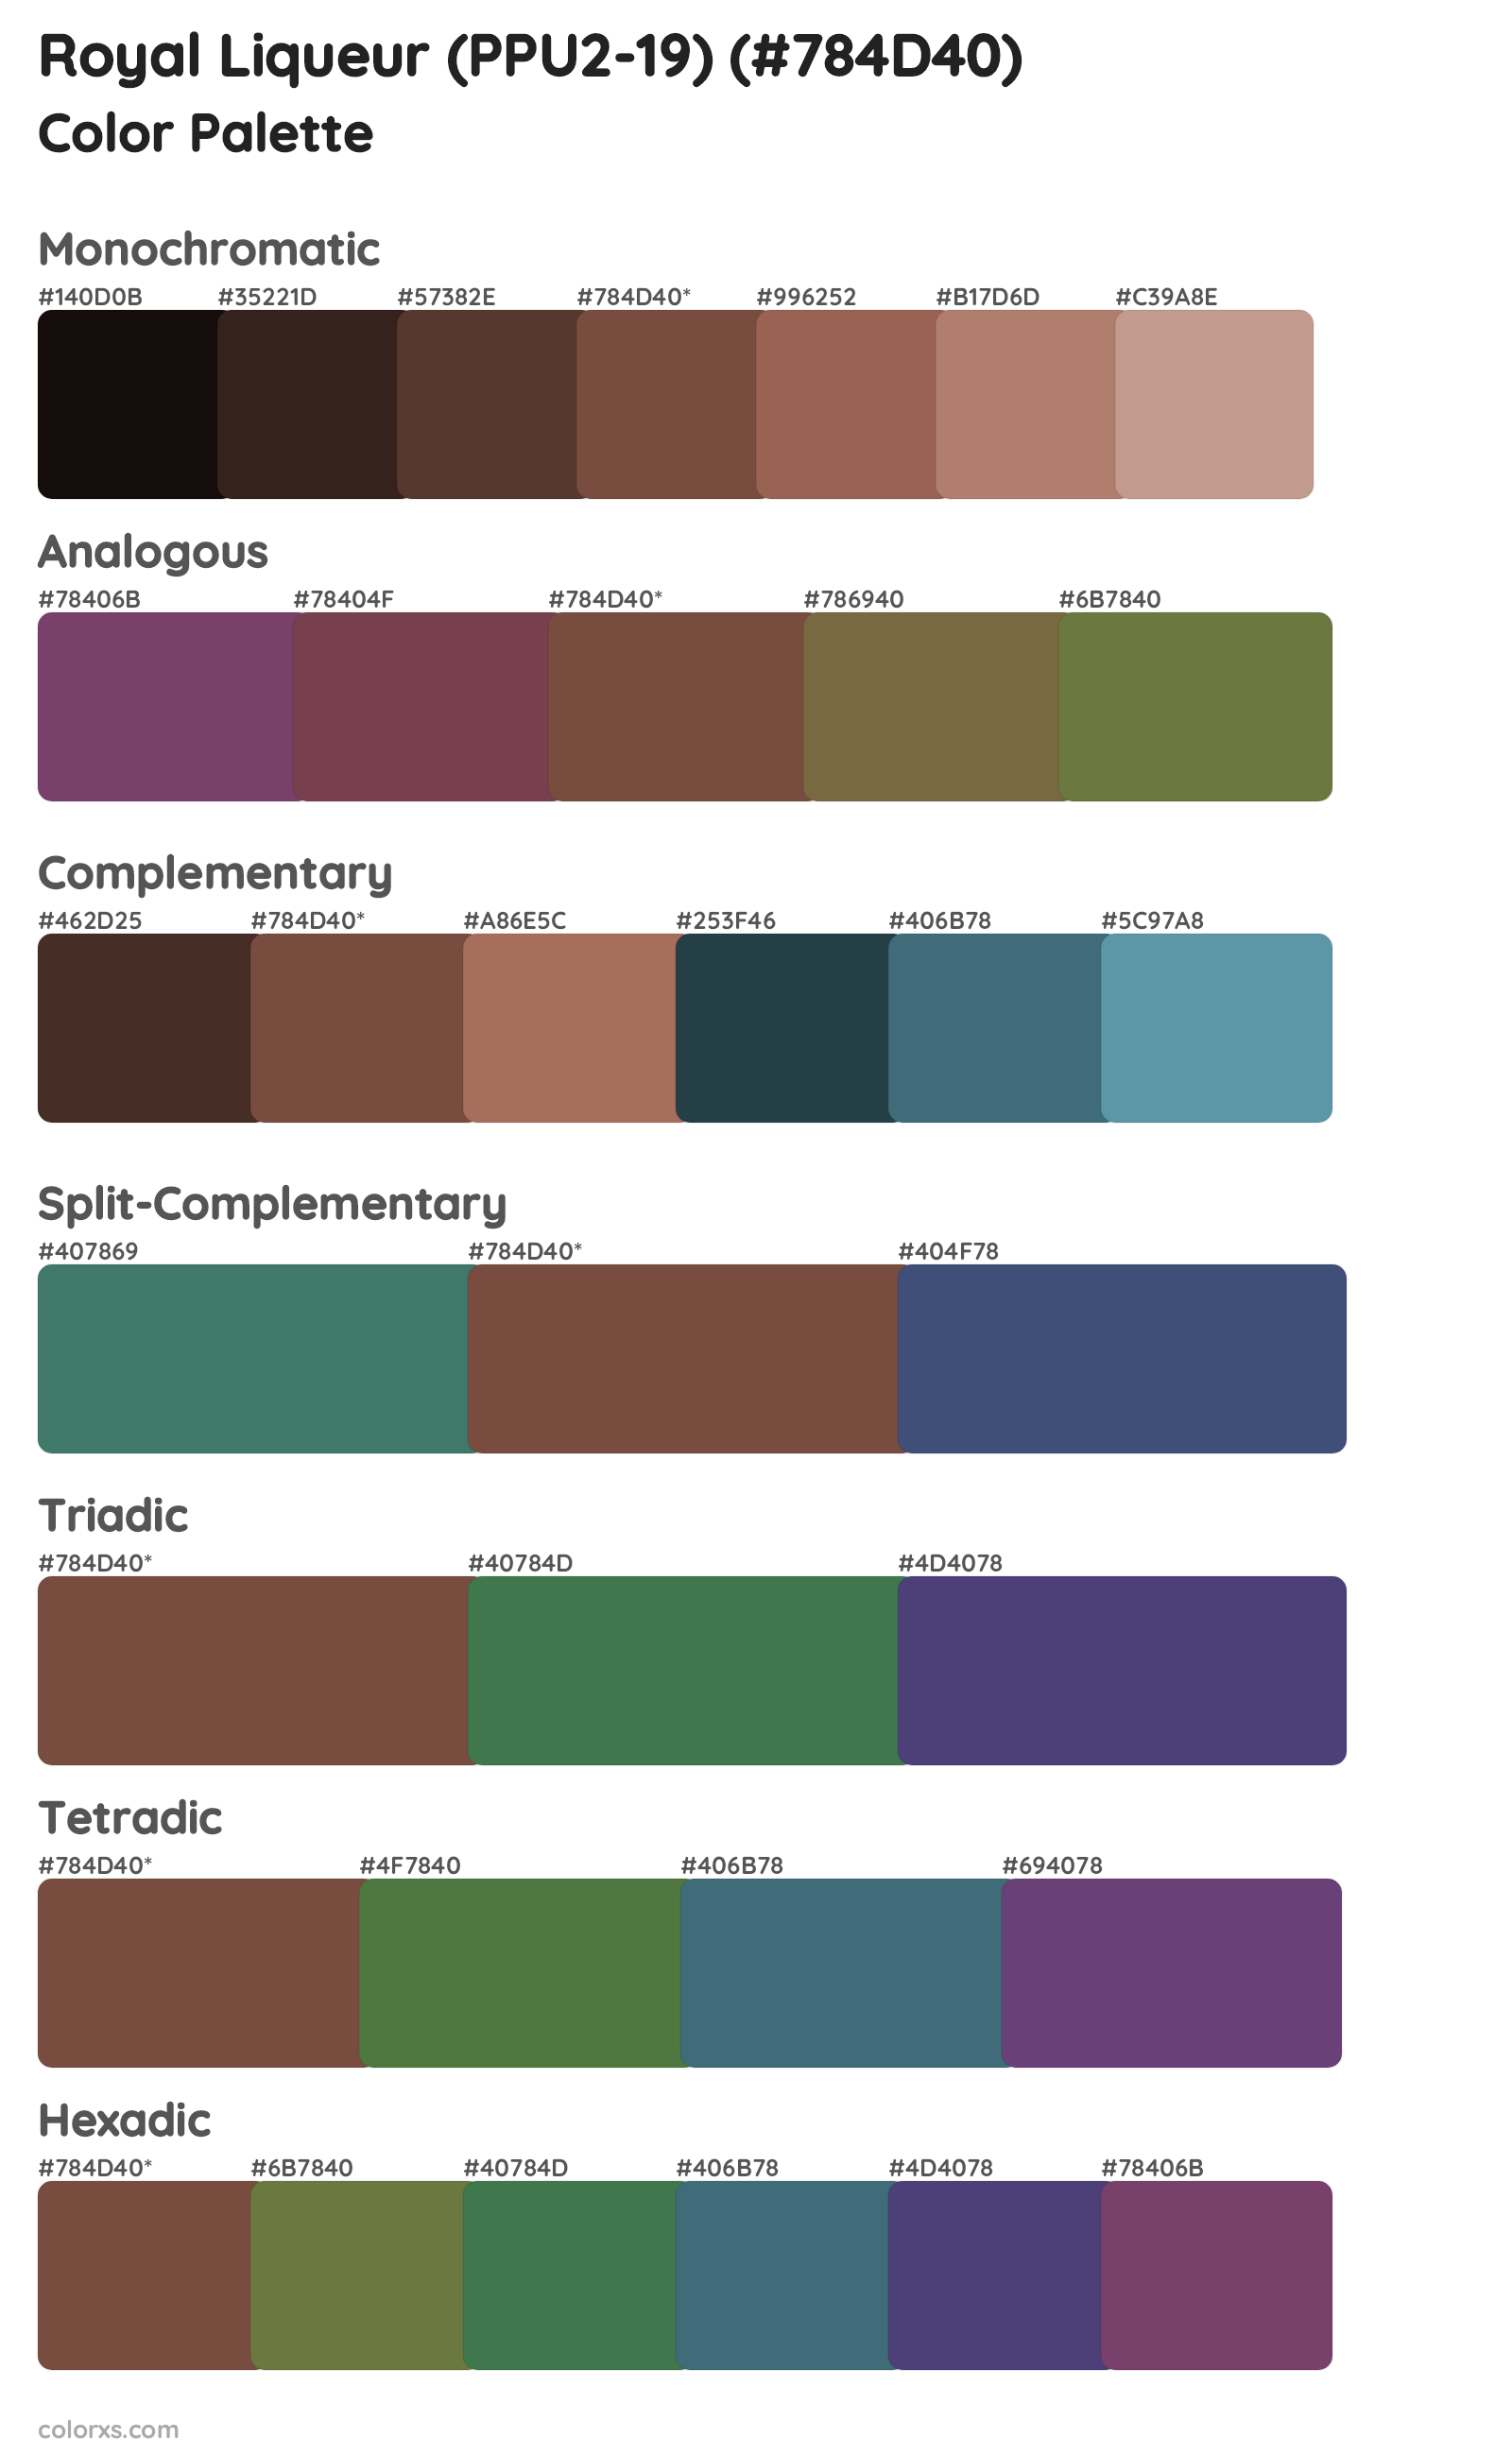 Royal Liqueur (PPU2-19) Color Scheme Palettes